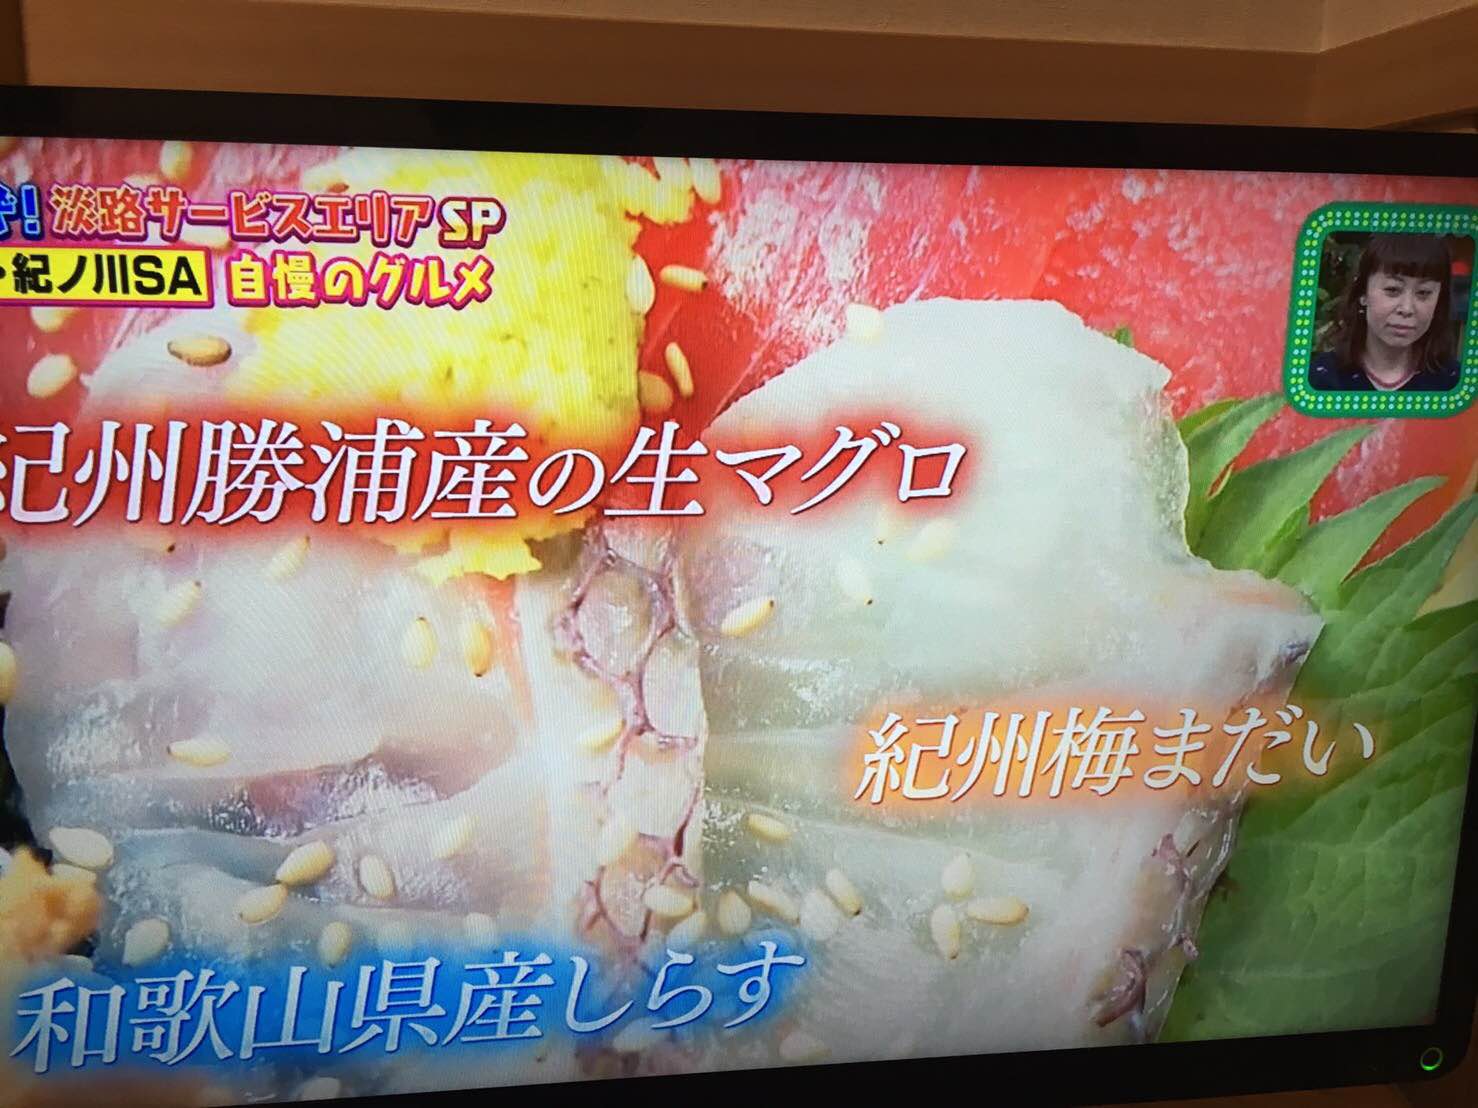 関西テレビ「ちゃちゃ入れマンデー」で、紀州梅まだいが紹介されました。